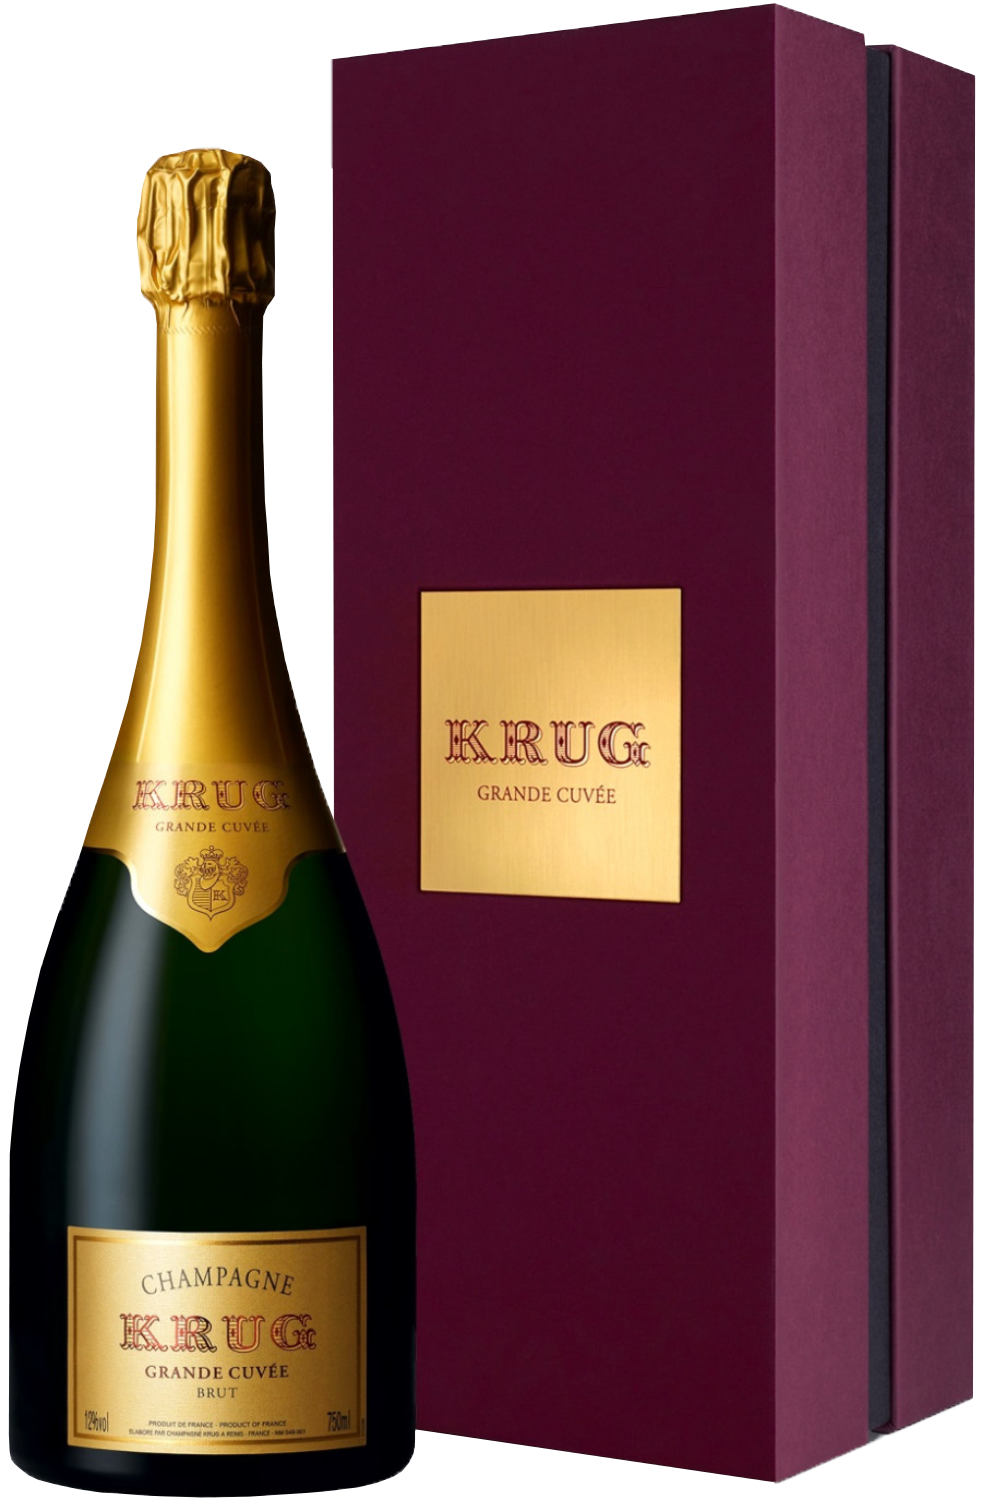 Krug Grande Cuvee Brut Champagne AOC (gift box) pierre de segonzac vsop grande champagne gift box